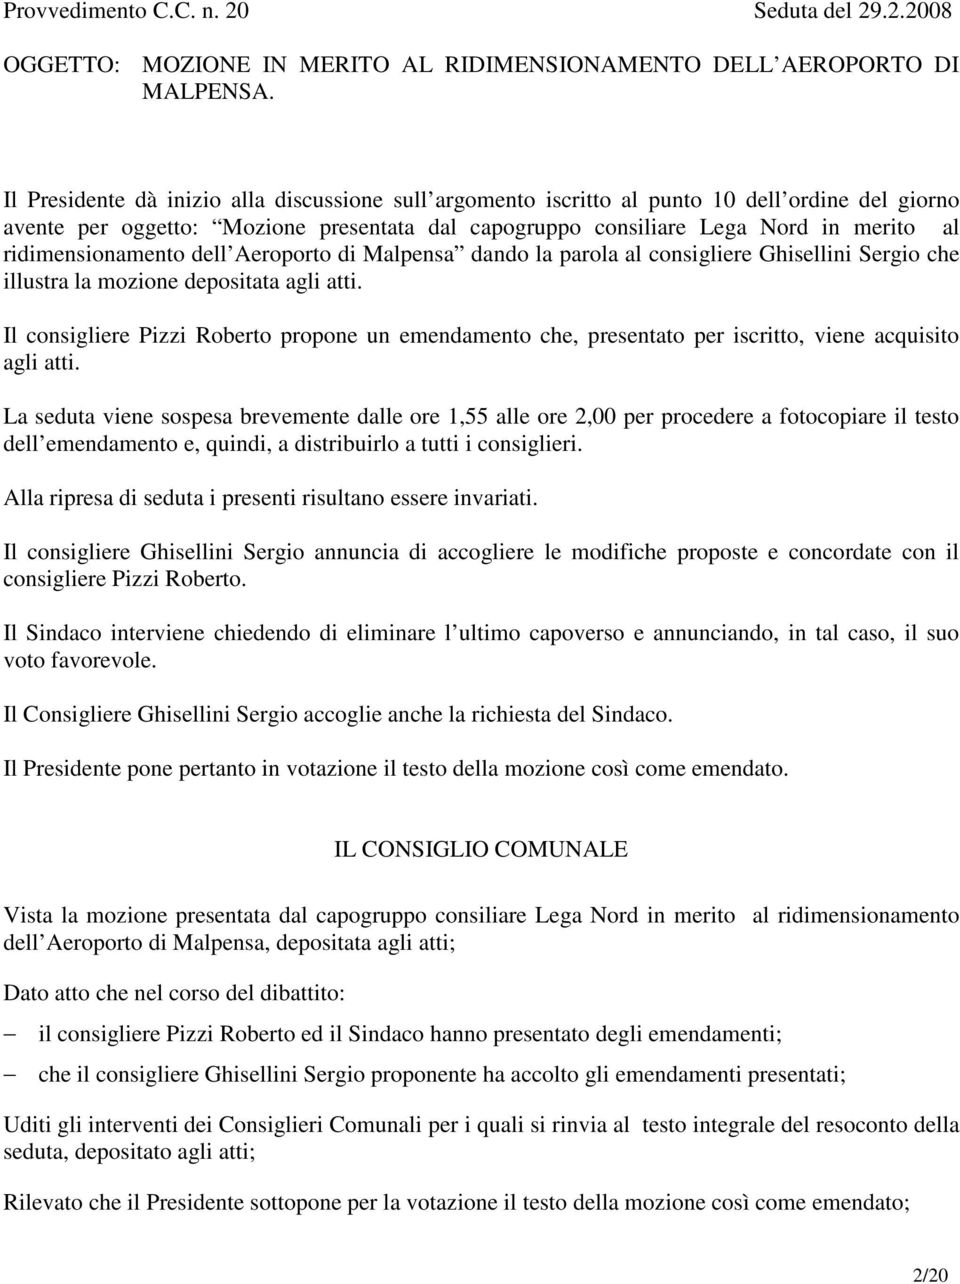 ridimensionamento dell Aeroporto di Malpensa dando la parola al consigliere Ghisellini Sergio che illustra la mozione depositata agli atti.